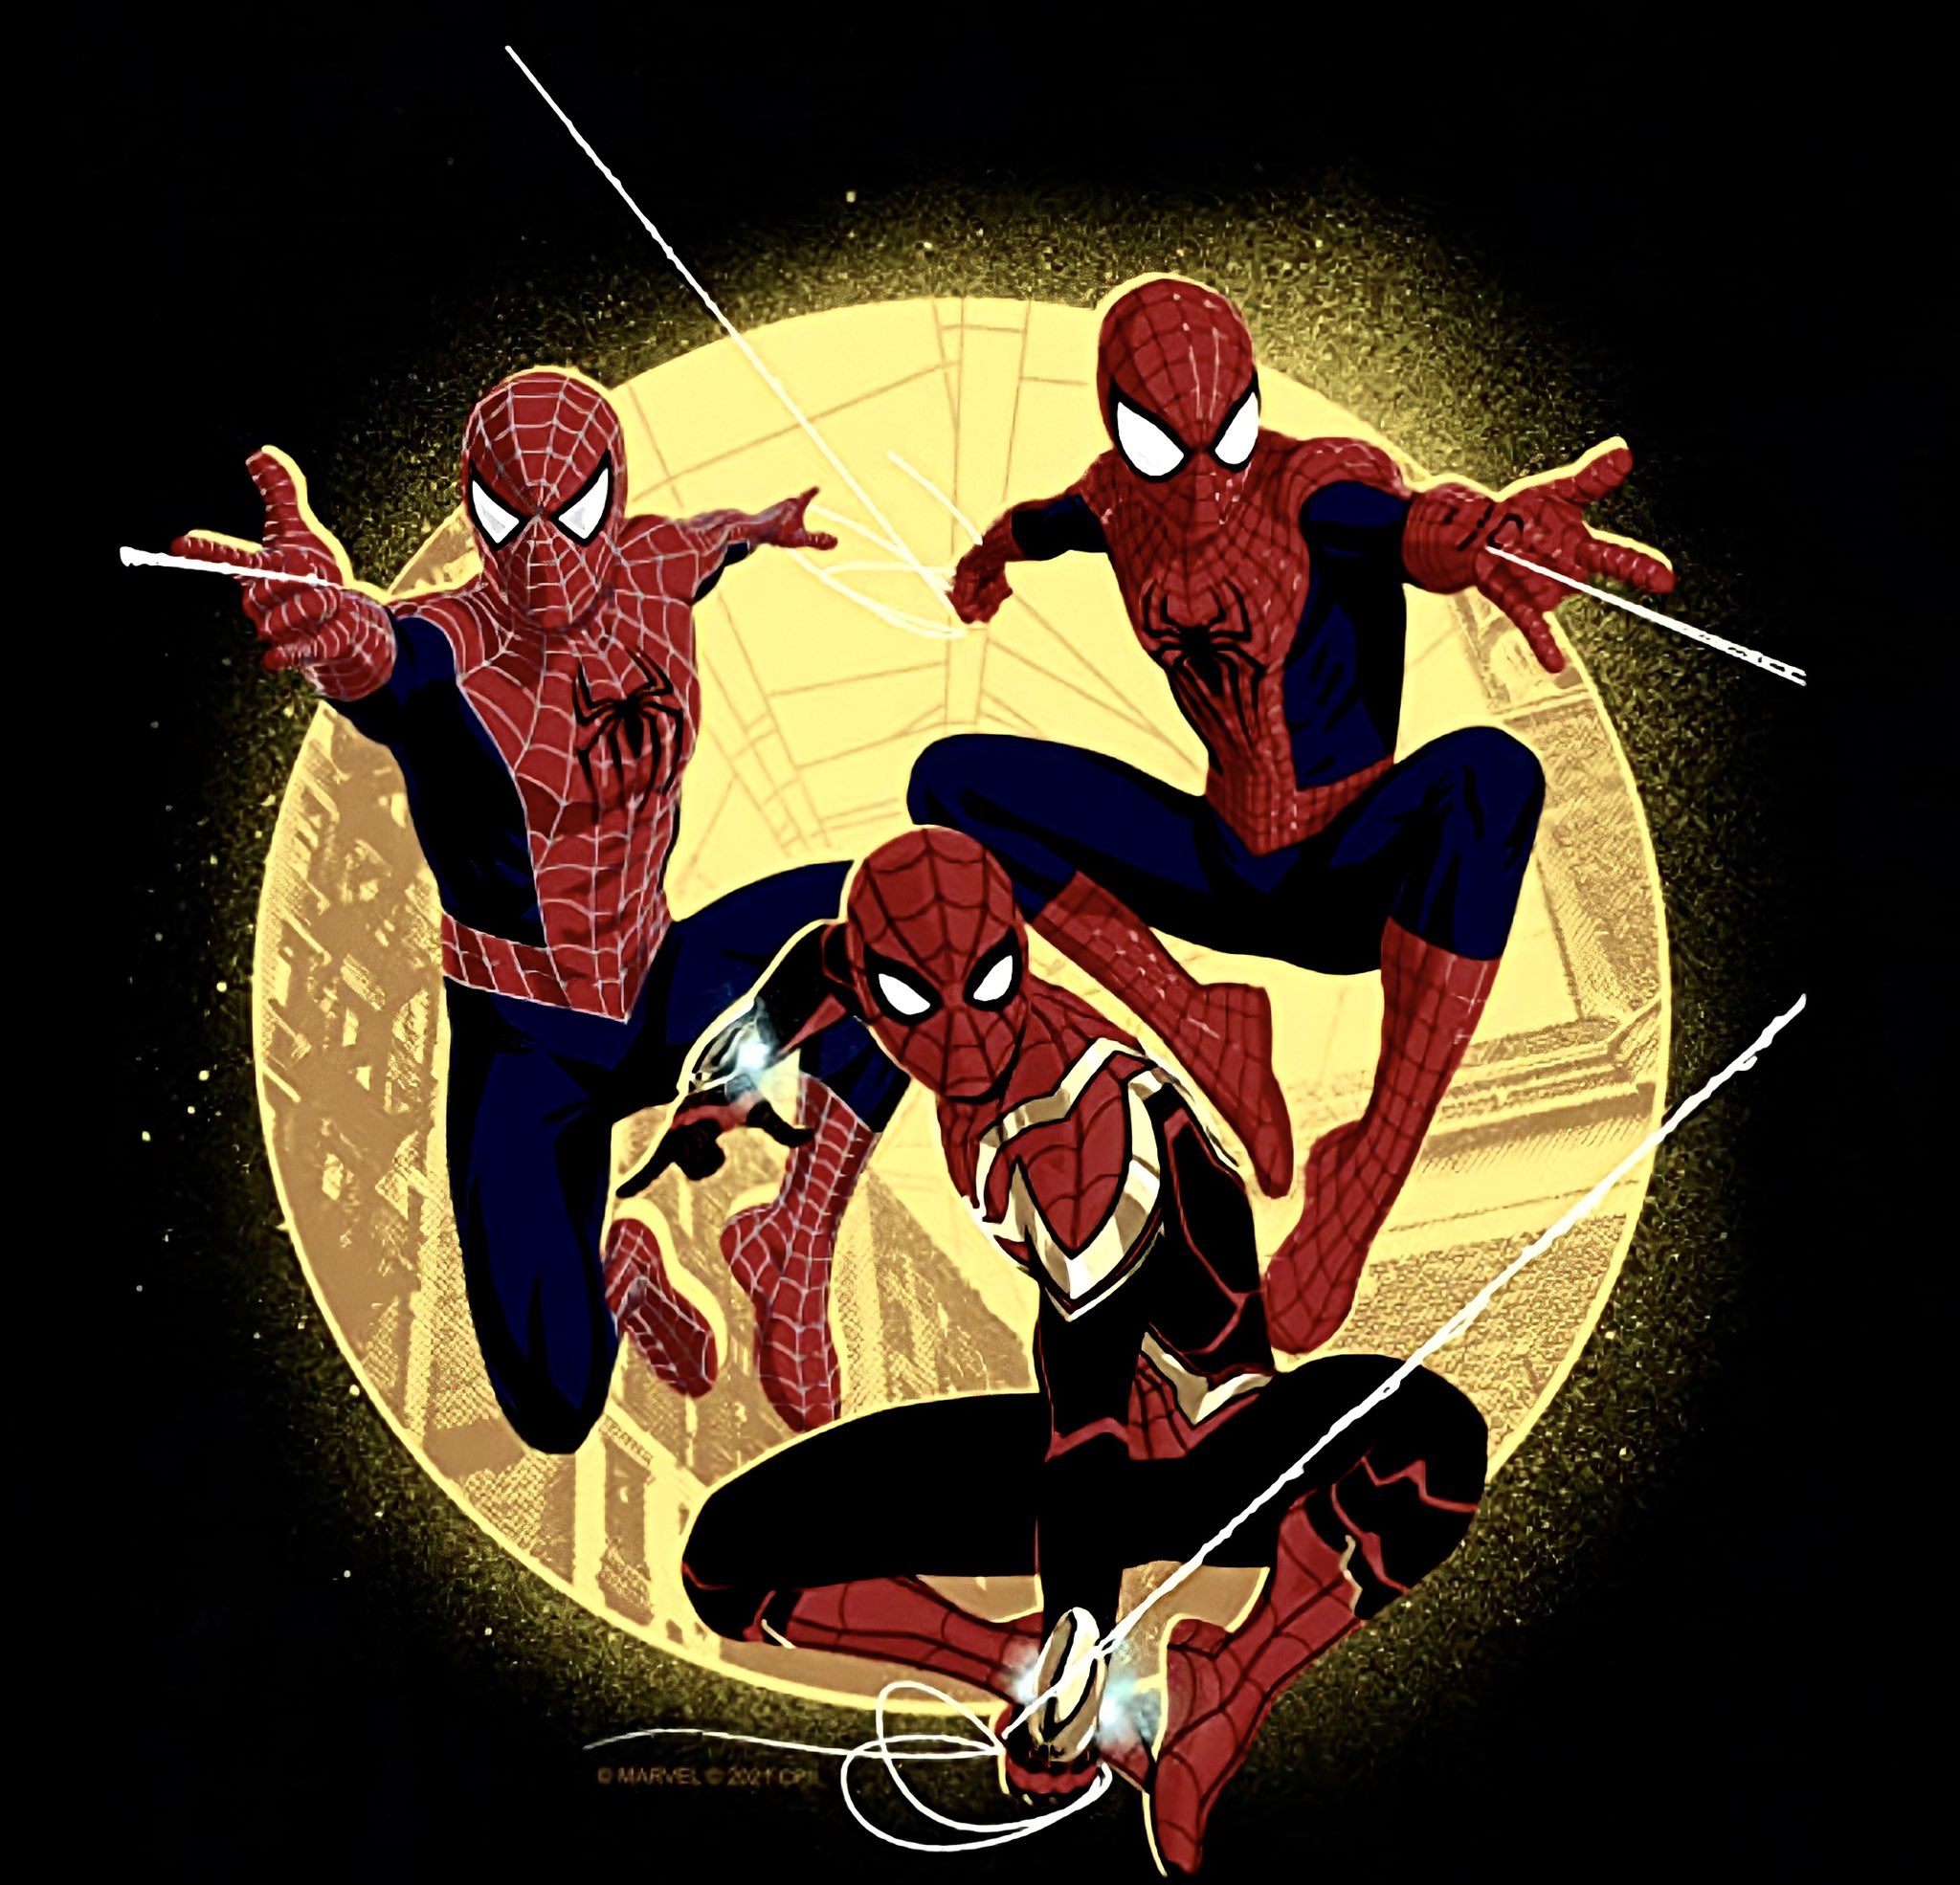 Spider-Man: no way home': ¿cómo escondieron a Andrew Garfield y Tobey  Maguire en el set de grabación? | spiderman | Cine y series | La República